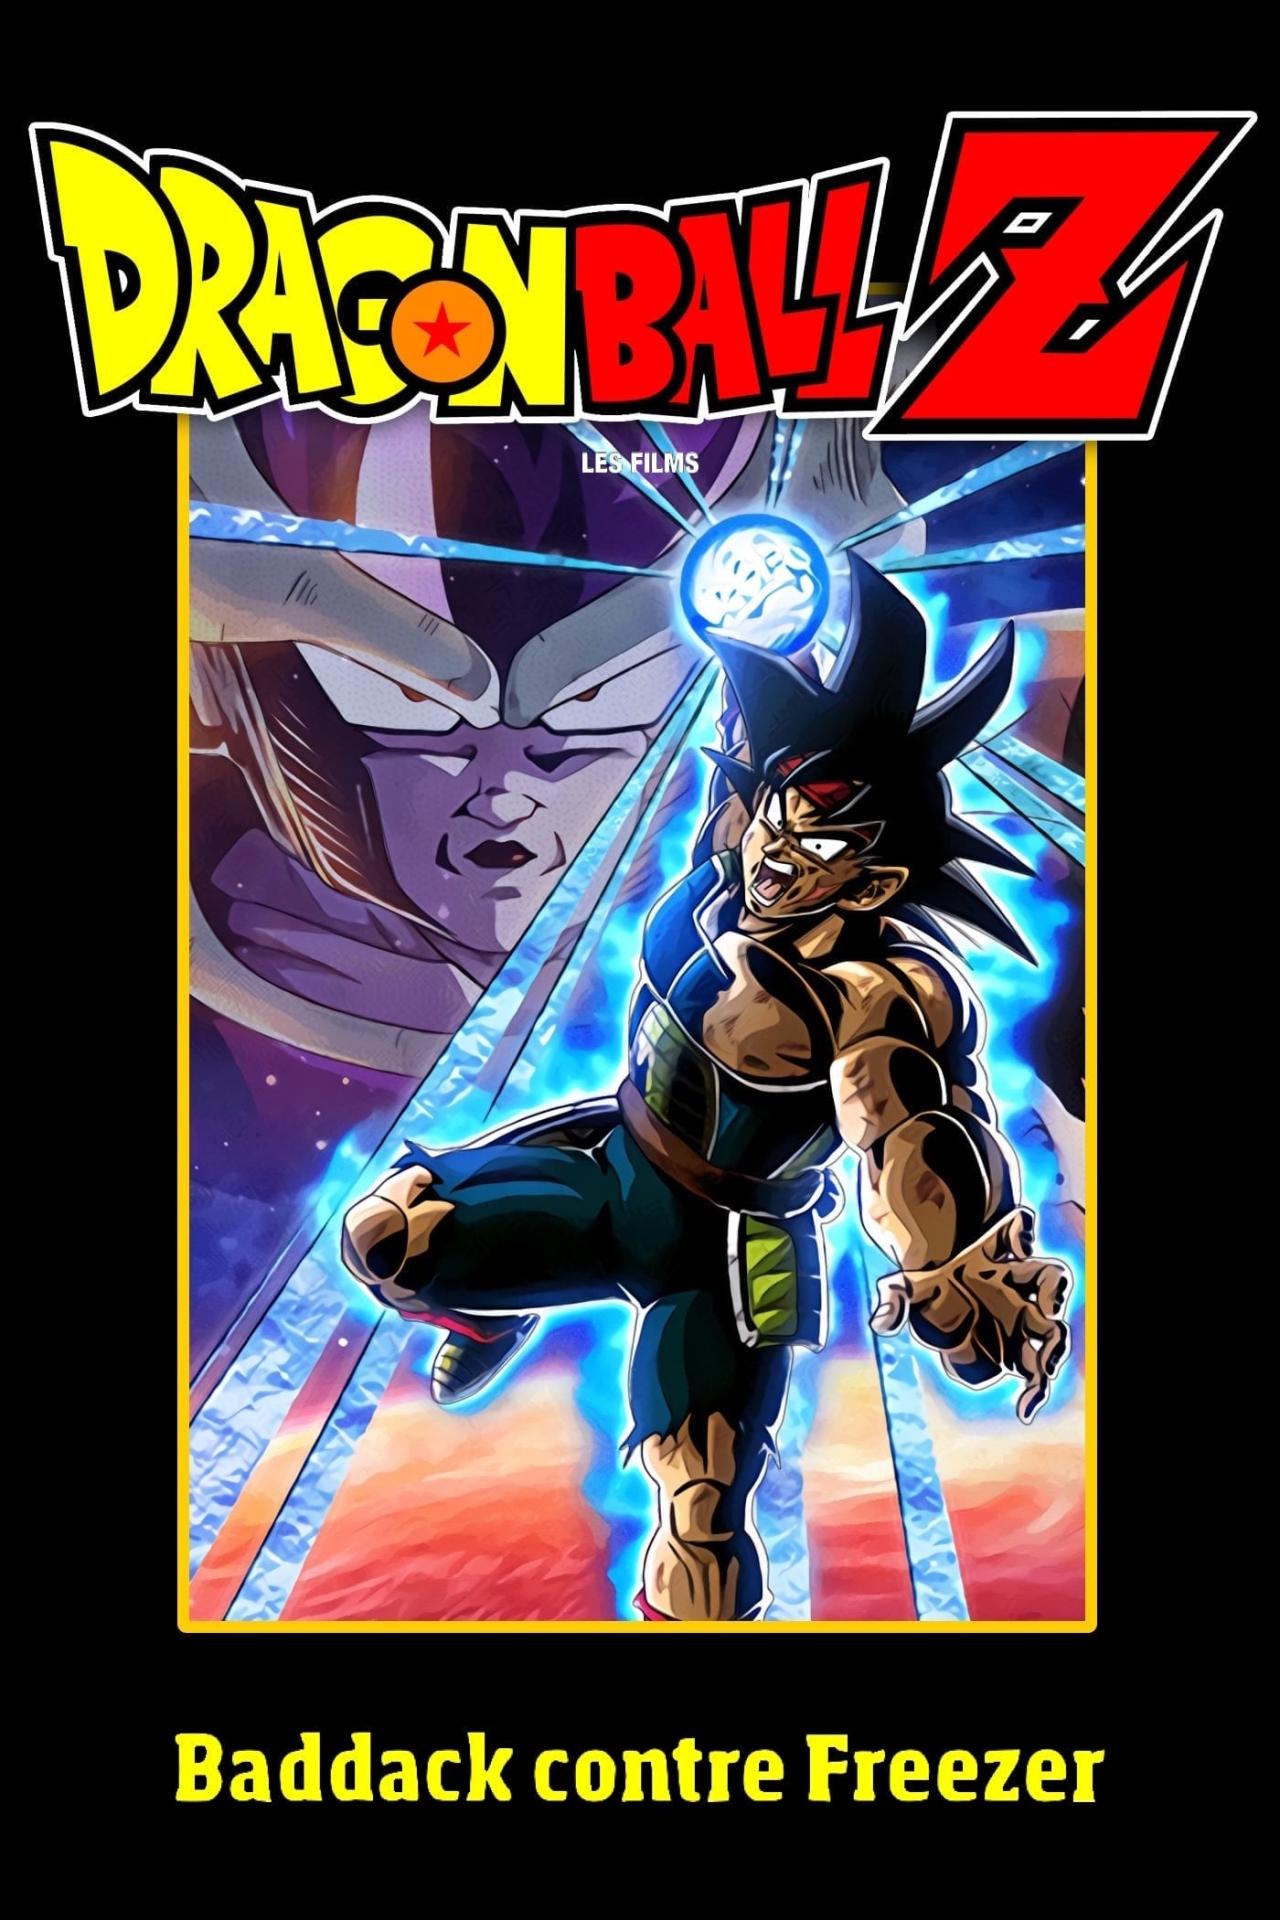 Dragon Ball Z - Baddack contre Freezer est-il disponible sur Netflix ou autre ?